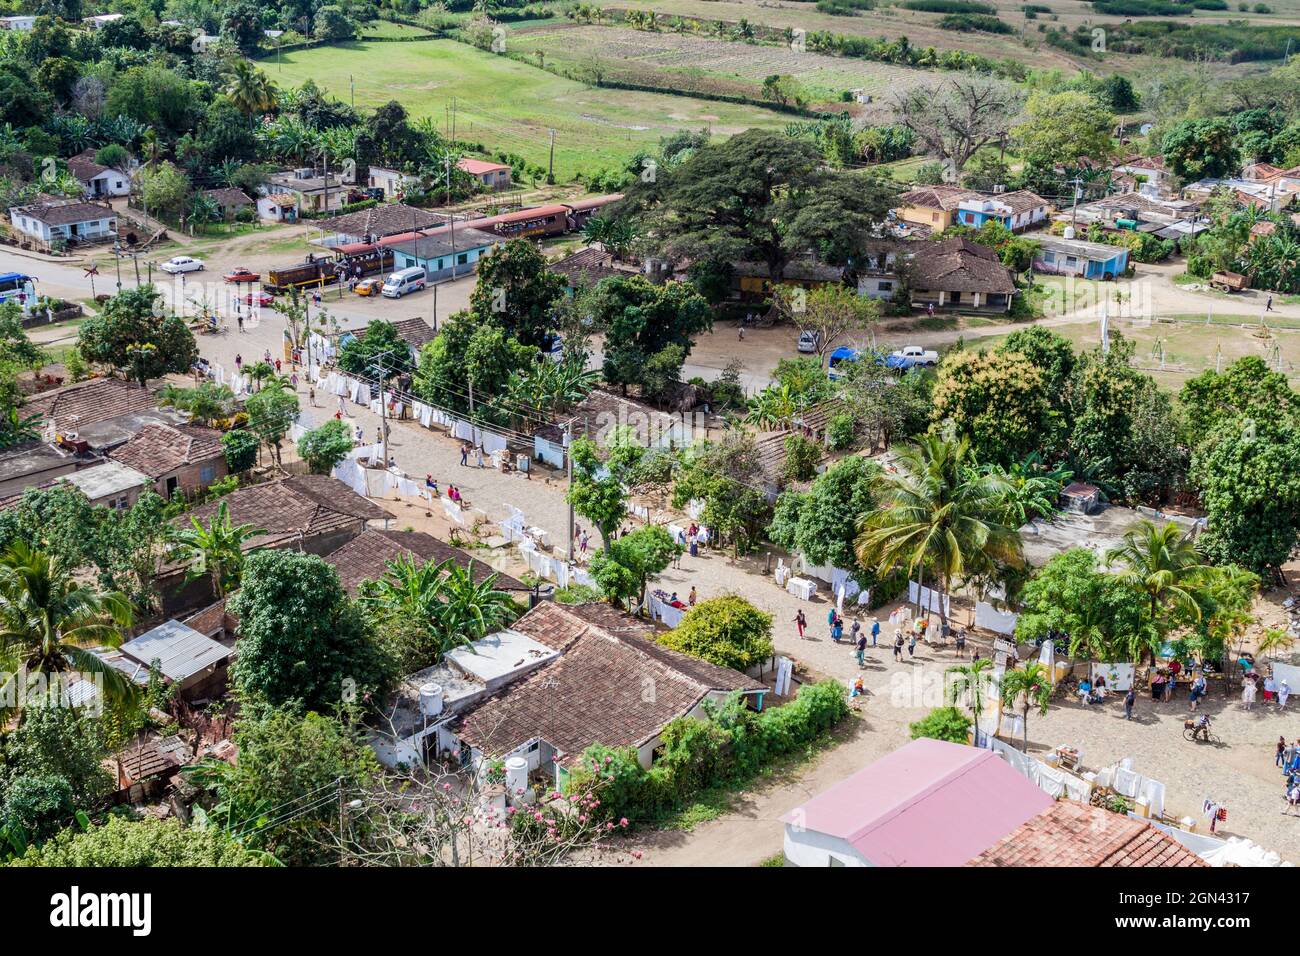 MANACA IZNAGA, KUBA - 9. FEB 2016: Luftaufnahme von Souvenirständen im Dorf Iznaga im Tal Valle de los Ingenios in der Nähe von Trinidad, Kuba Stockfoto